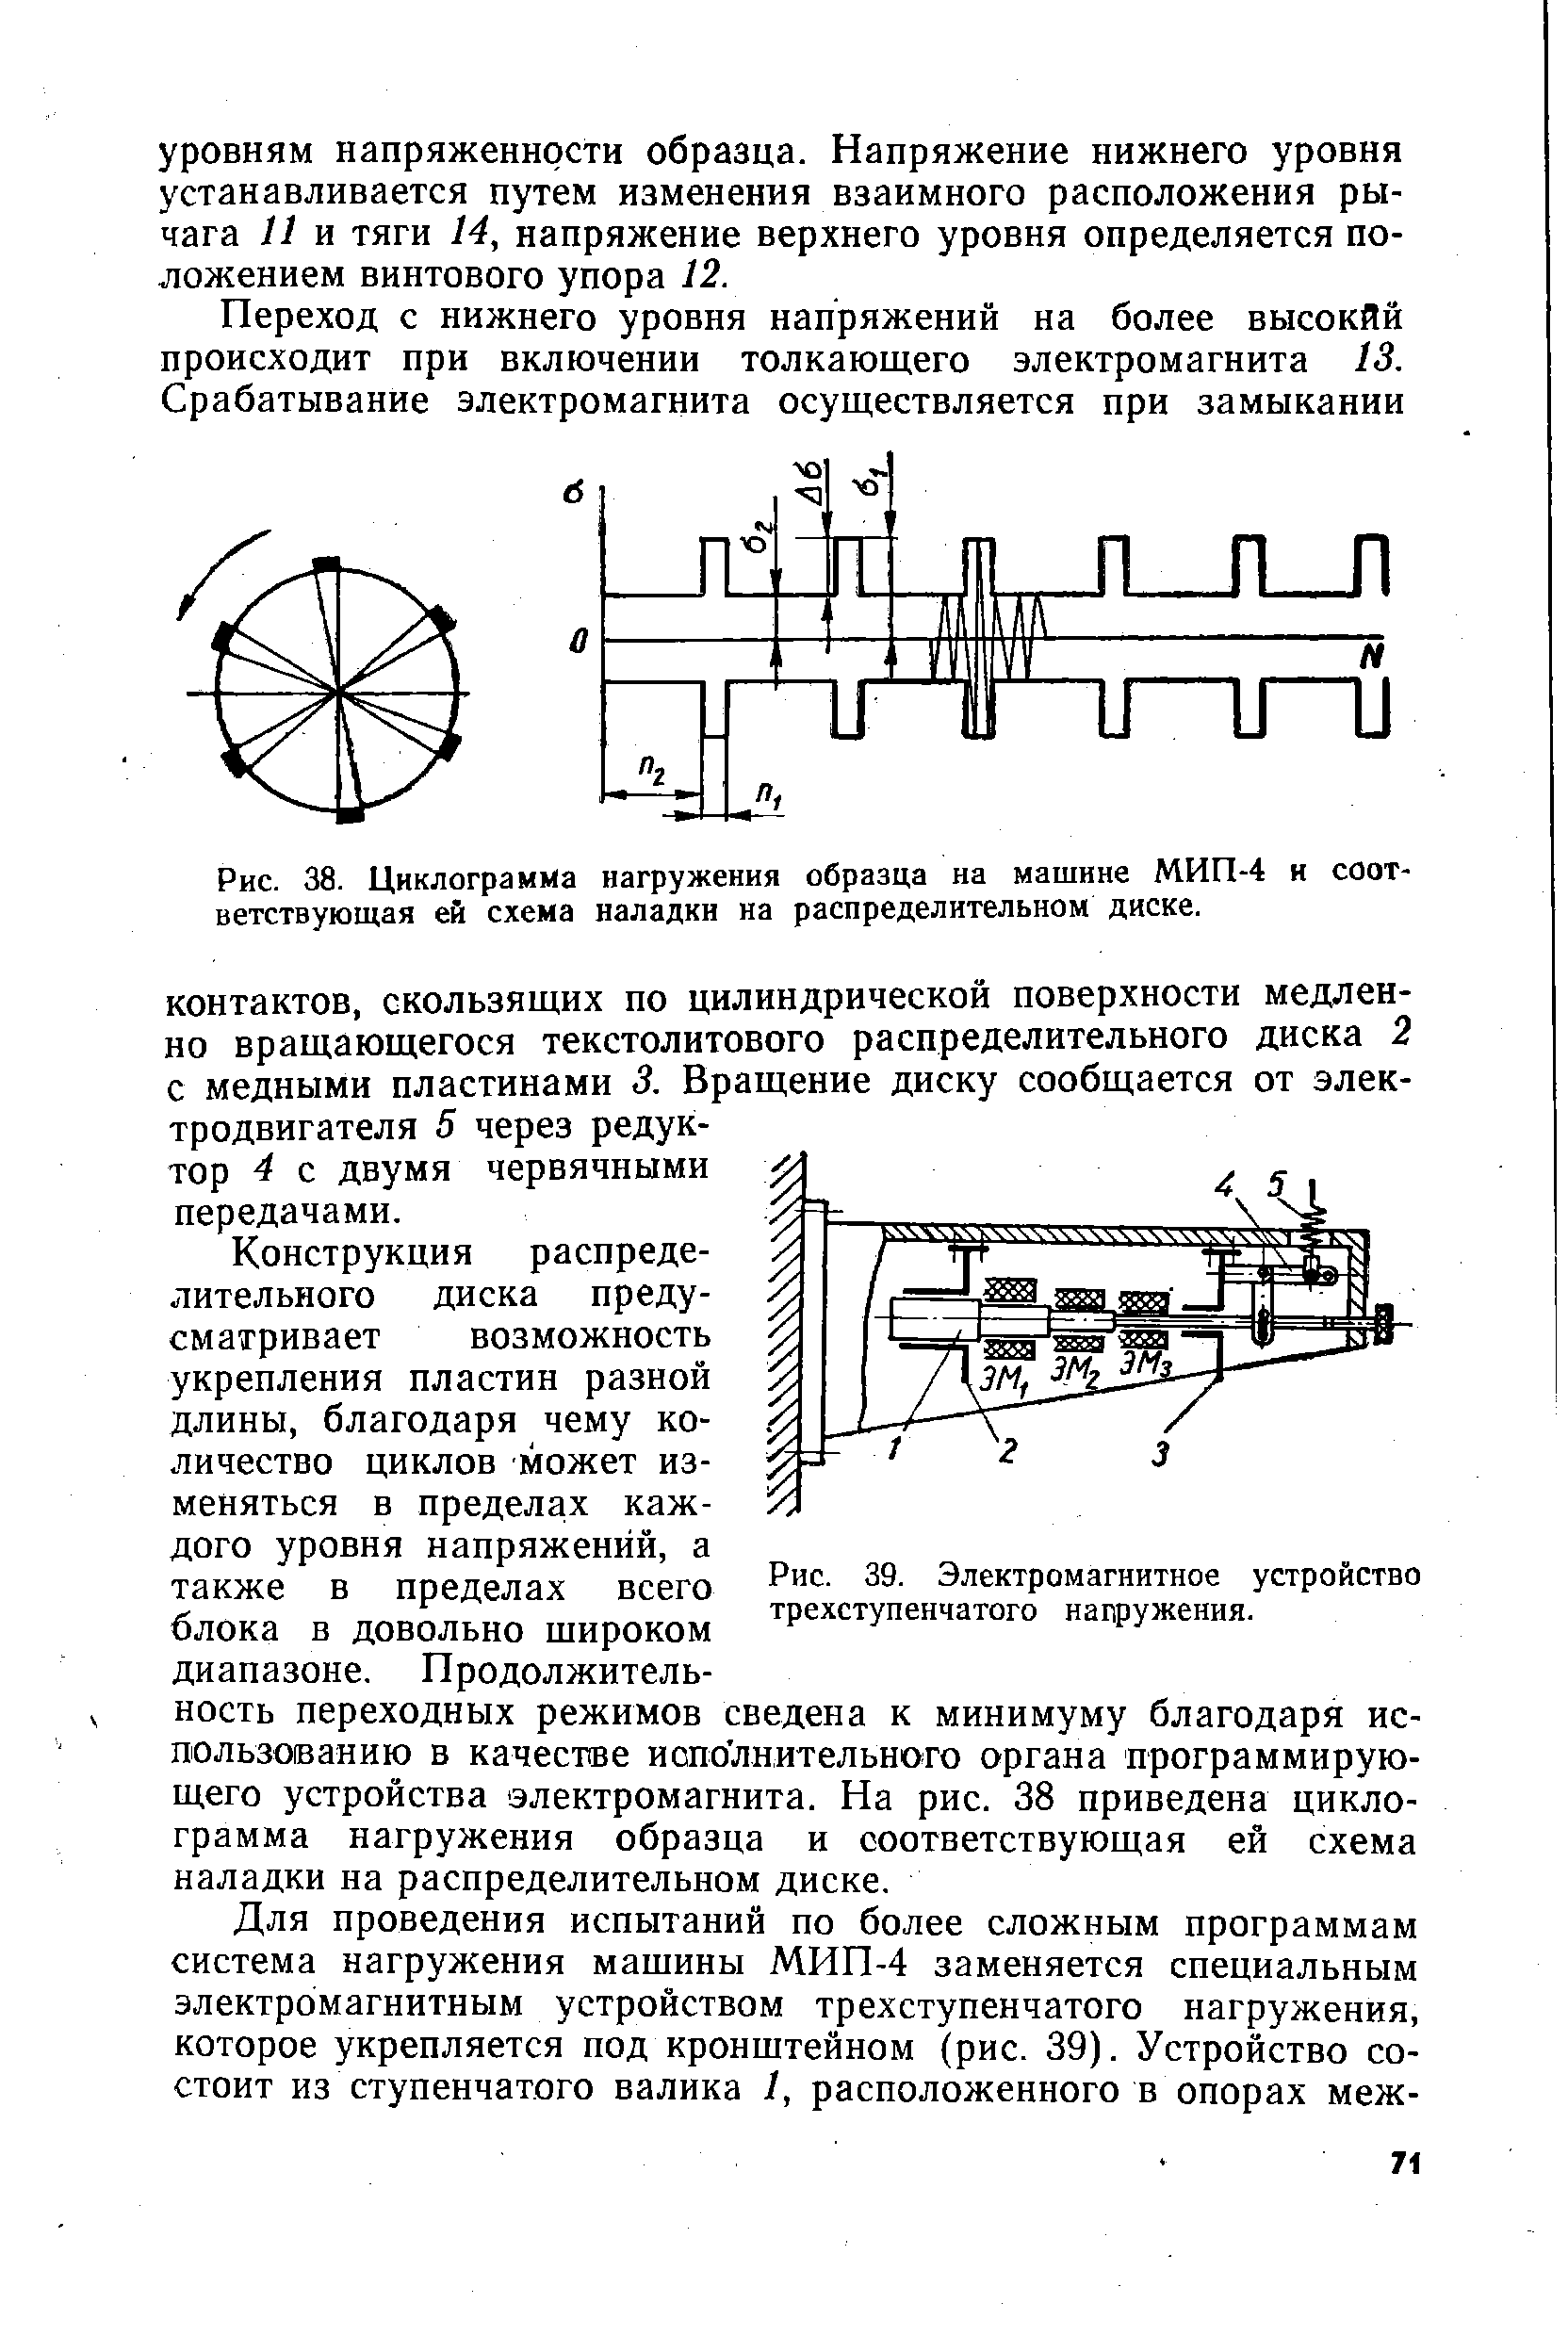 Рис. 39. Электромагнитное устройство трехступенчатого нагружения.
